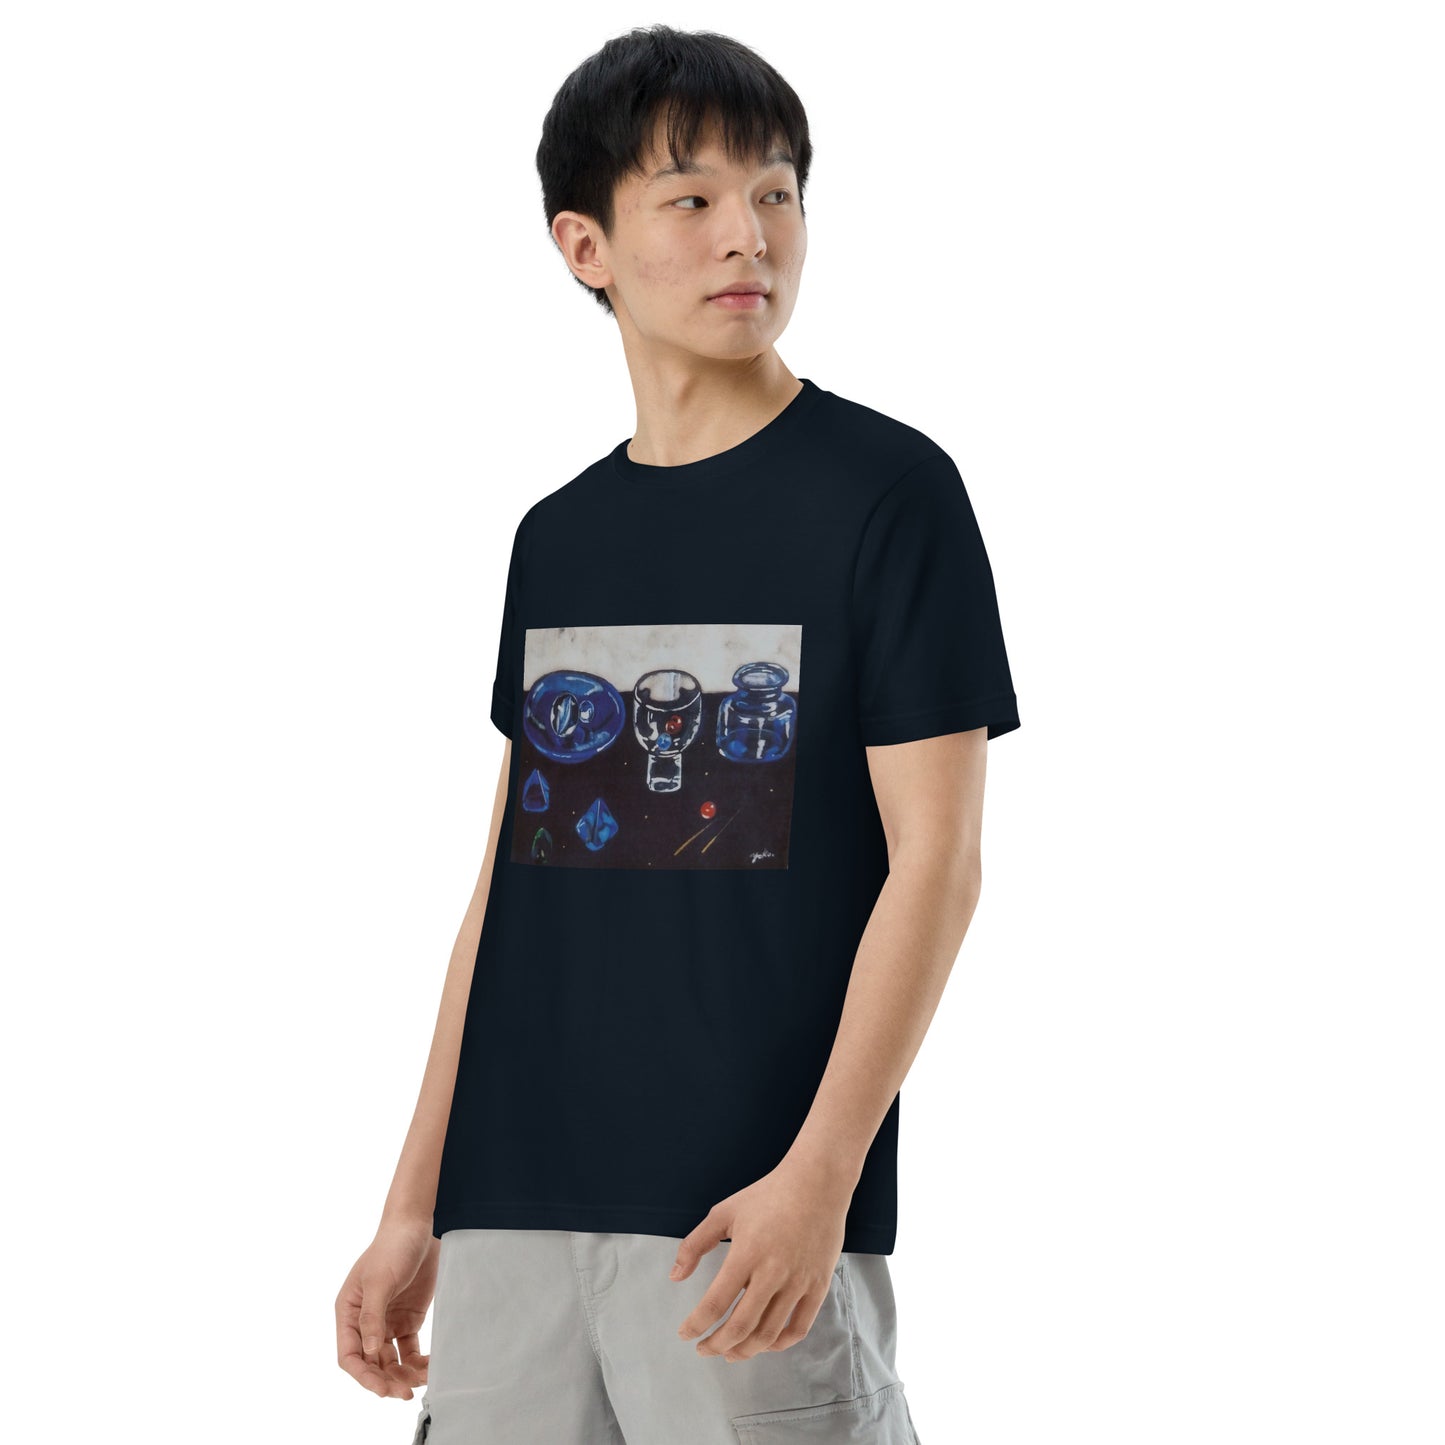 037-赤木葉子-6-前面プリントTシャツ-アートをデザイン